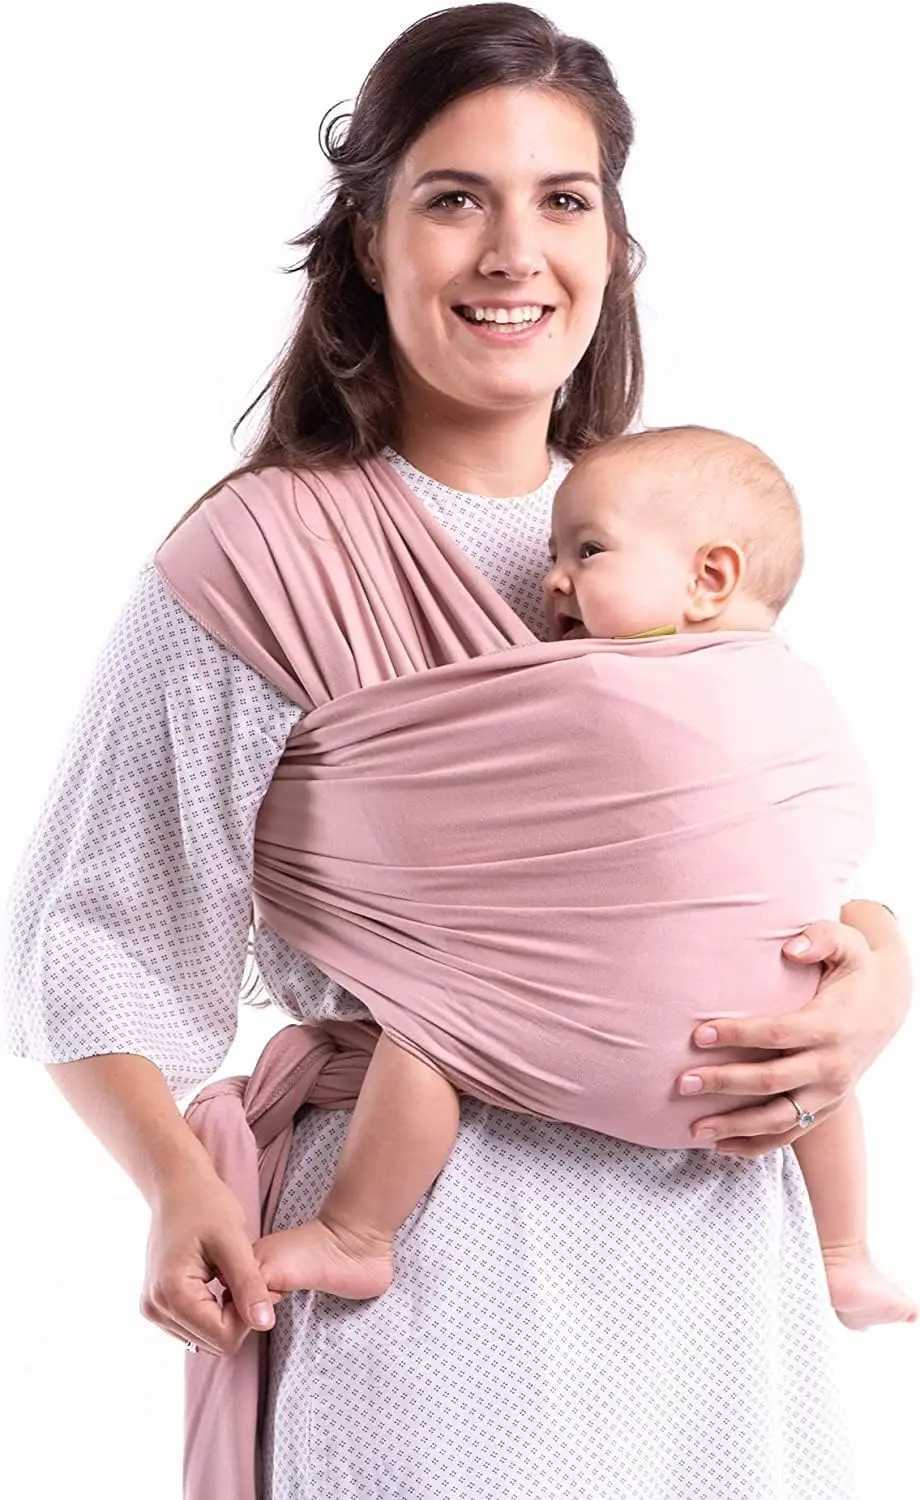 Transportörer slingrar ryggsäckar Bomull Babyförpackningsbärare Stretch Cotton Travel Packaging Carrier för nyfödda till små barn baby Sling 0-36 månader gammal T240509